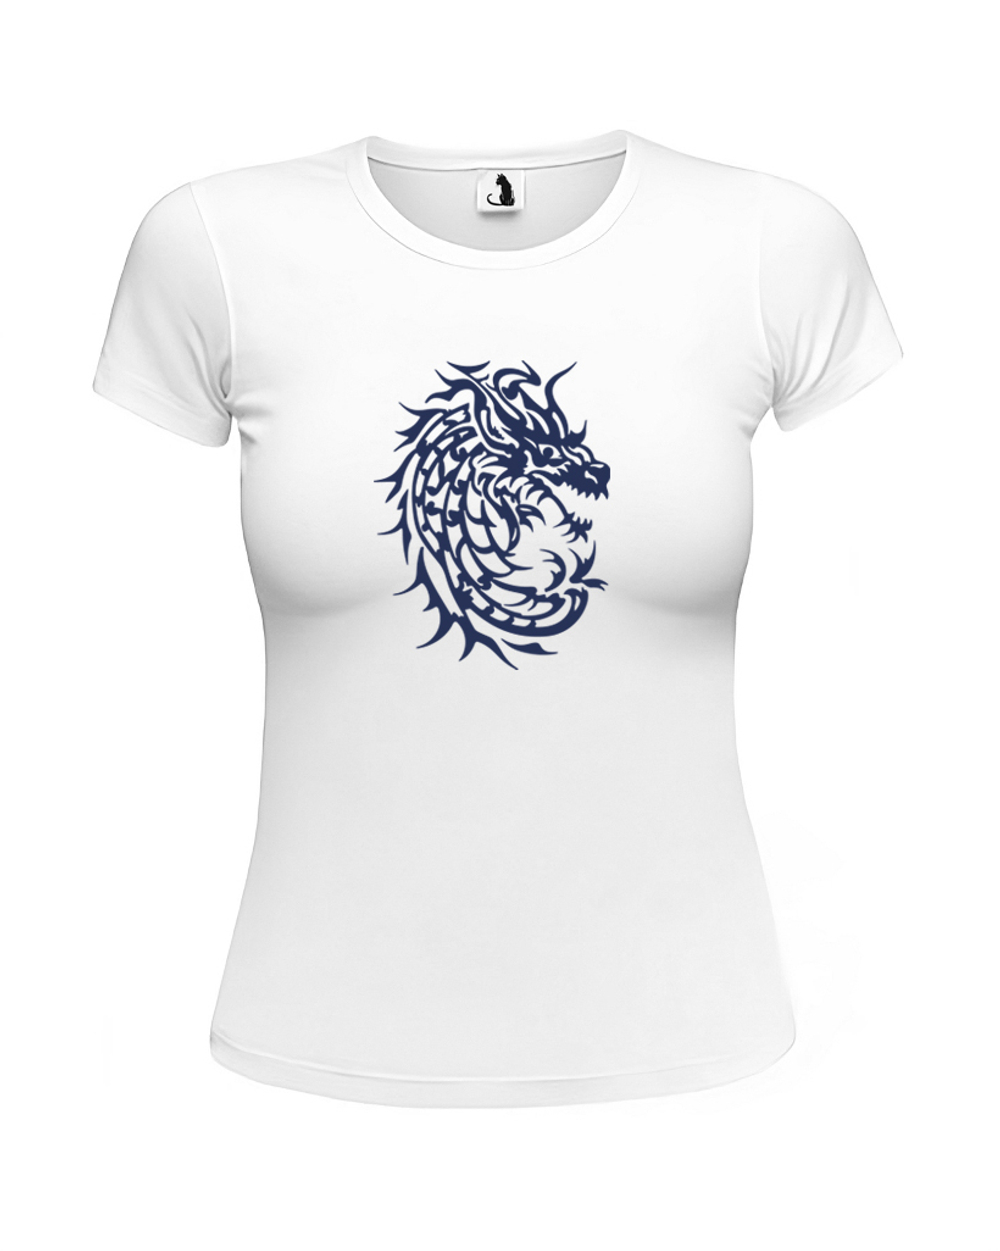 Футболка c драконом женская приталенная белая с синим рисунком